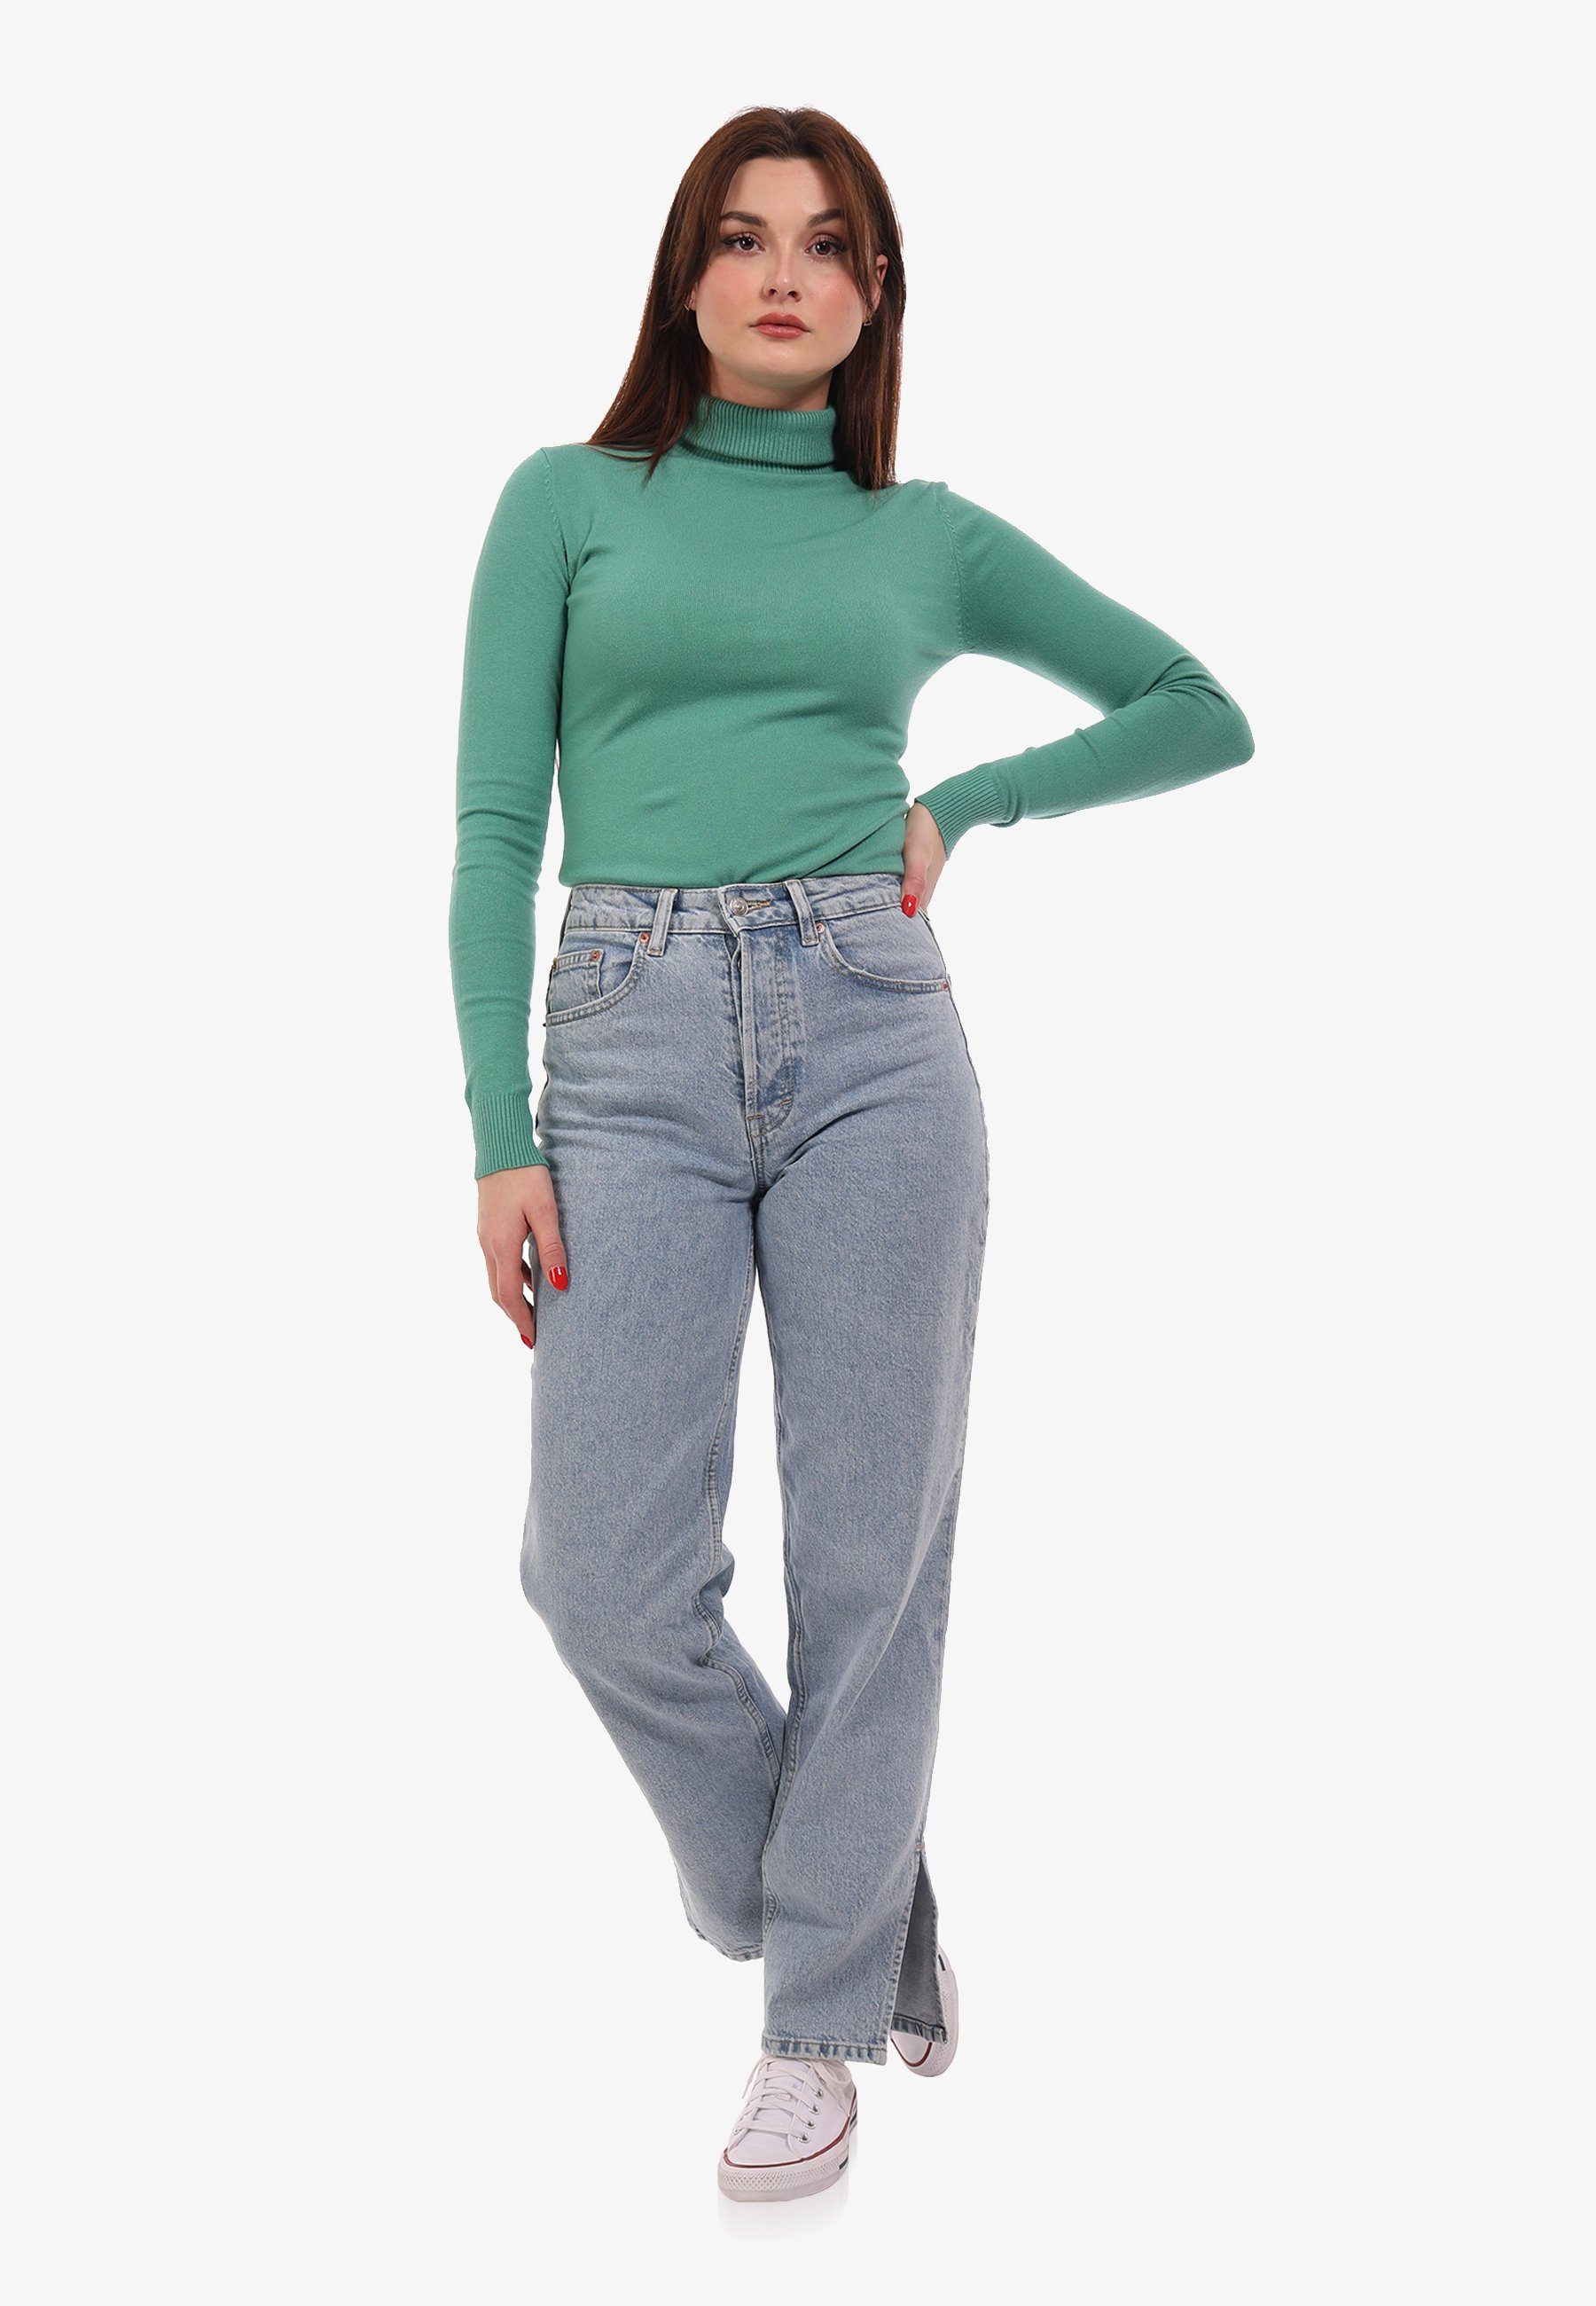 YC Fashion & Style Strickpullover Basic Rollkragen Pullover Grün